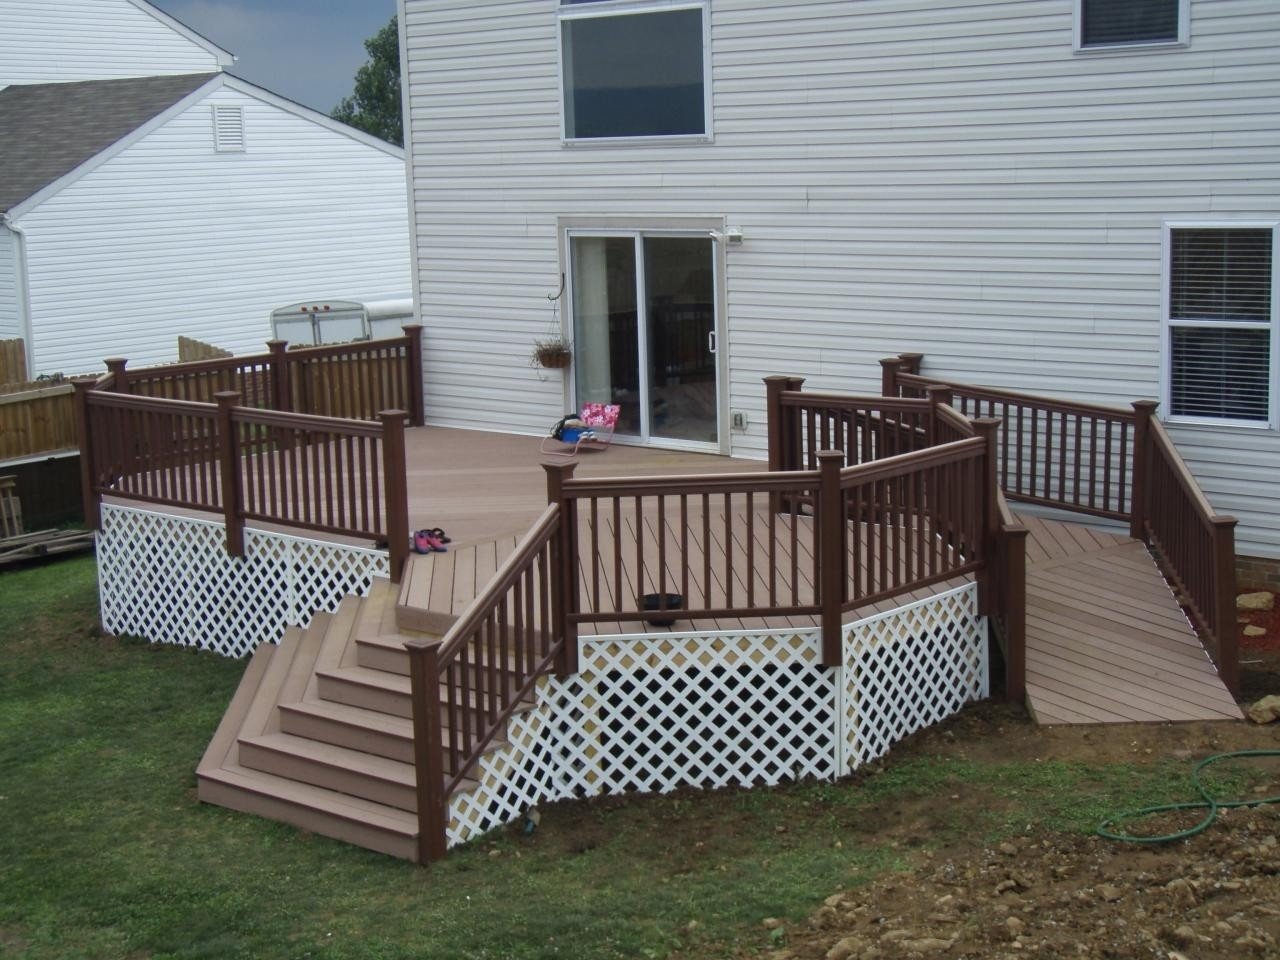 Handicap Deck Ramp Design Decks In Backyard Deck With Ramp in measurements 1280 X 960